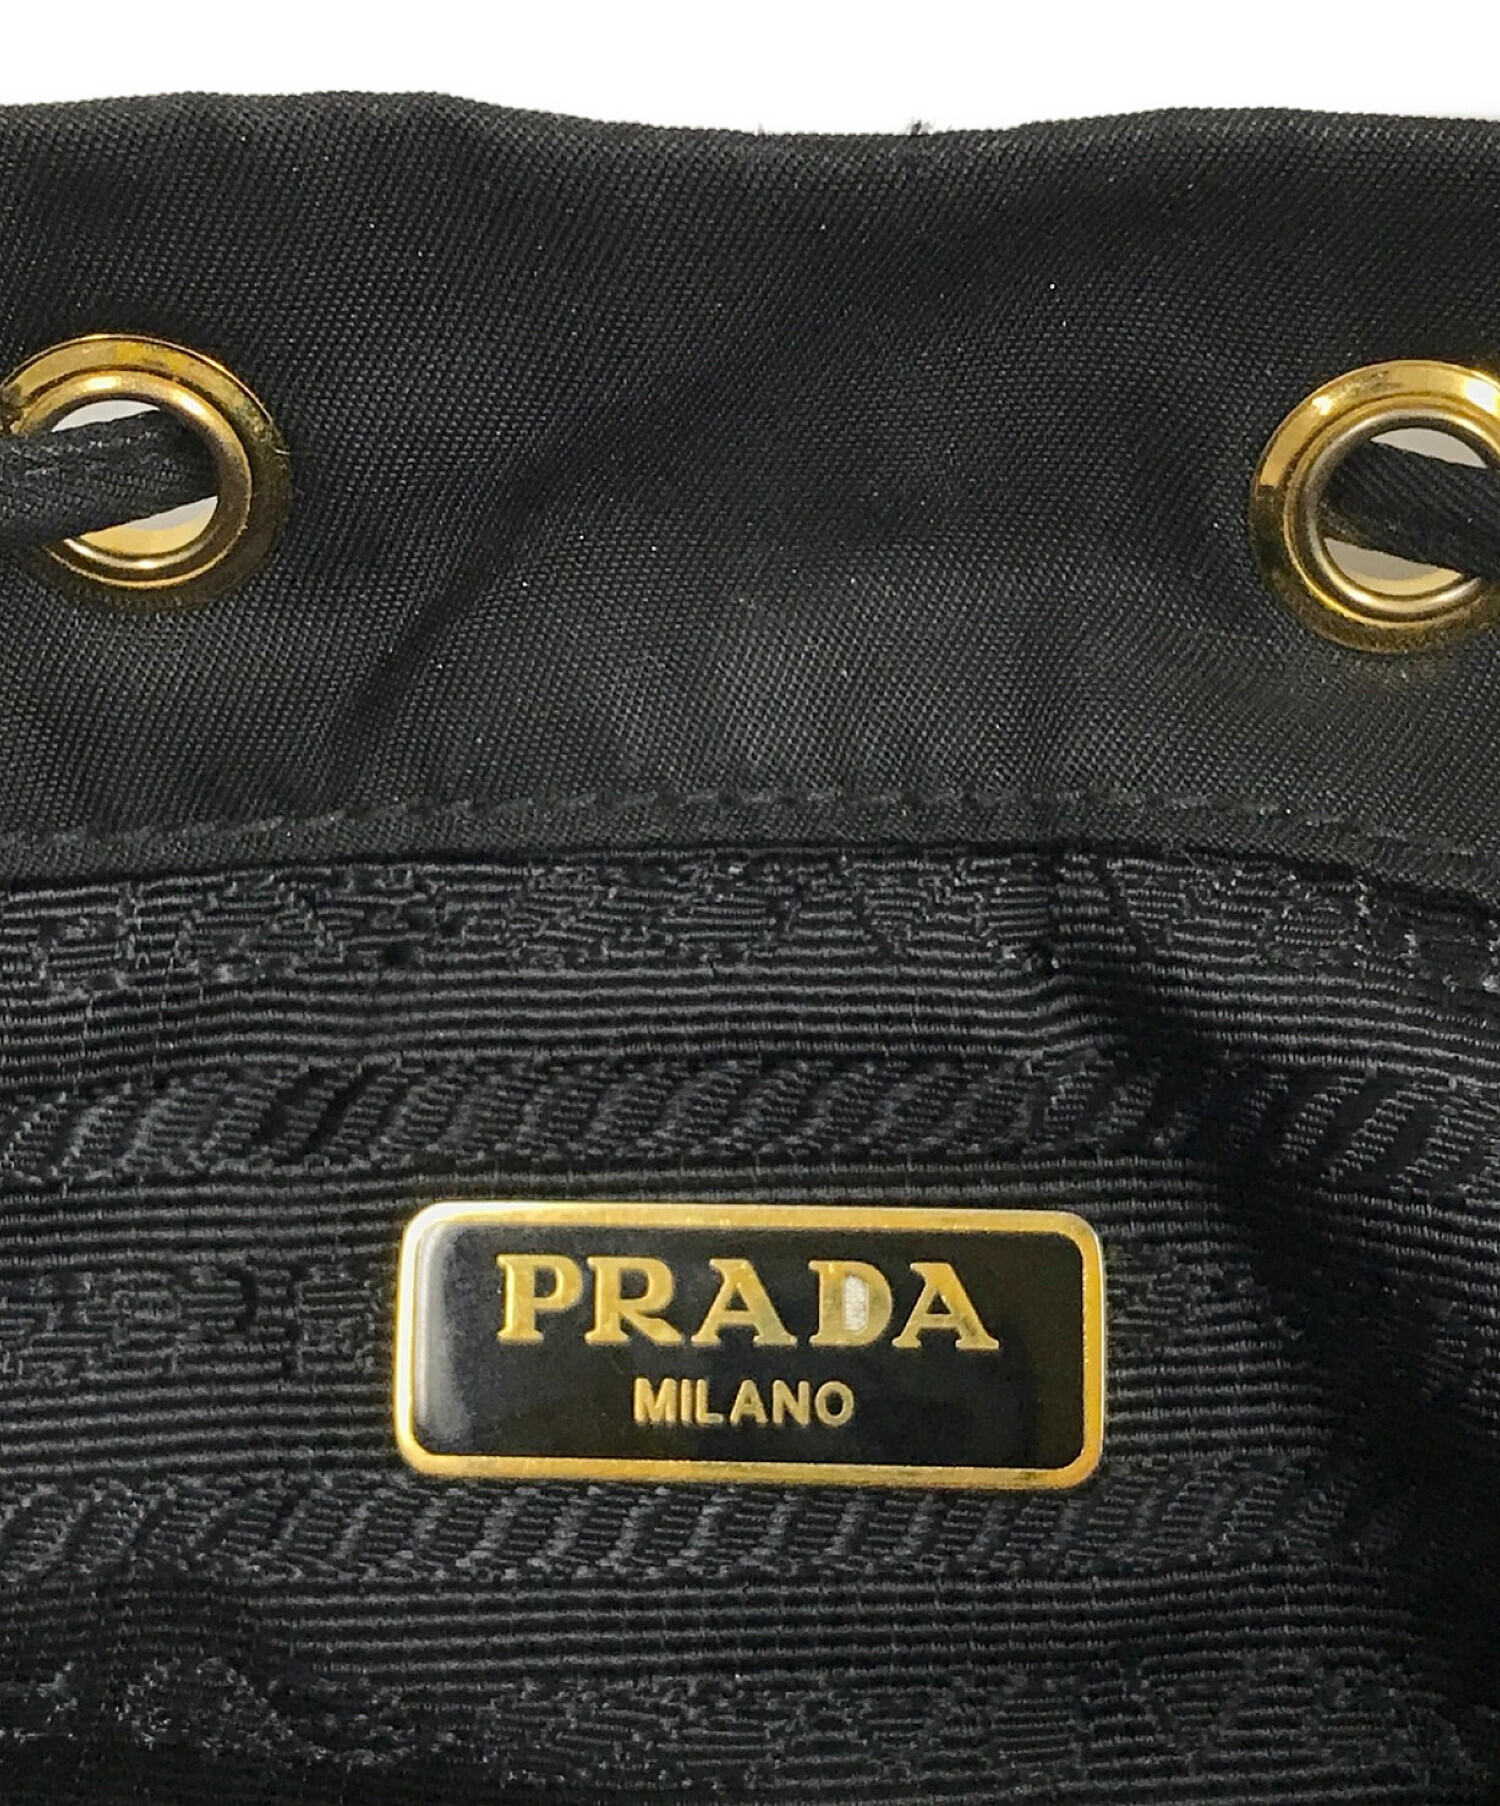 新品未使用 おしゃれ PRADA 2way 巾着型 ショルダーバッグ 黒ご購入を宜しくお願いします